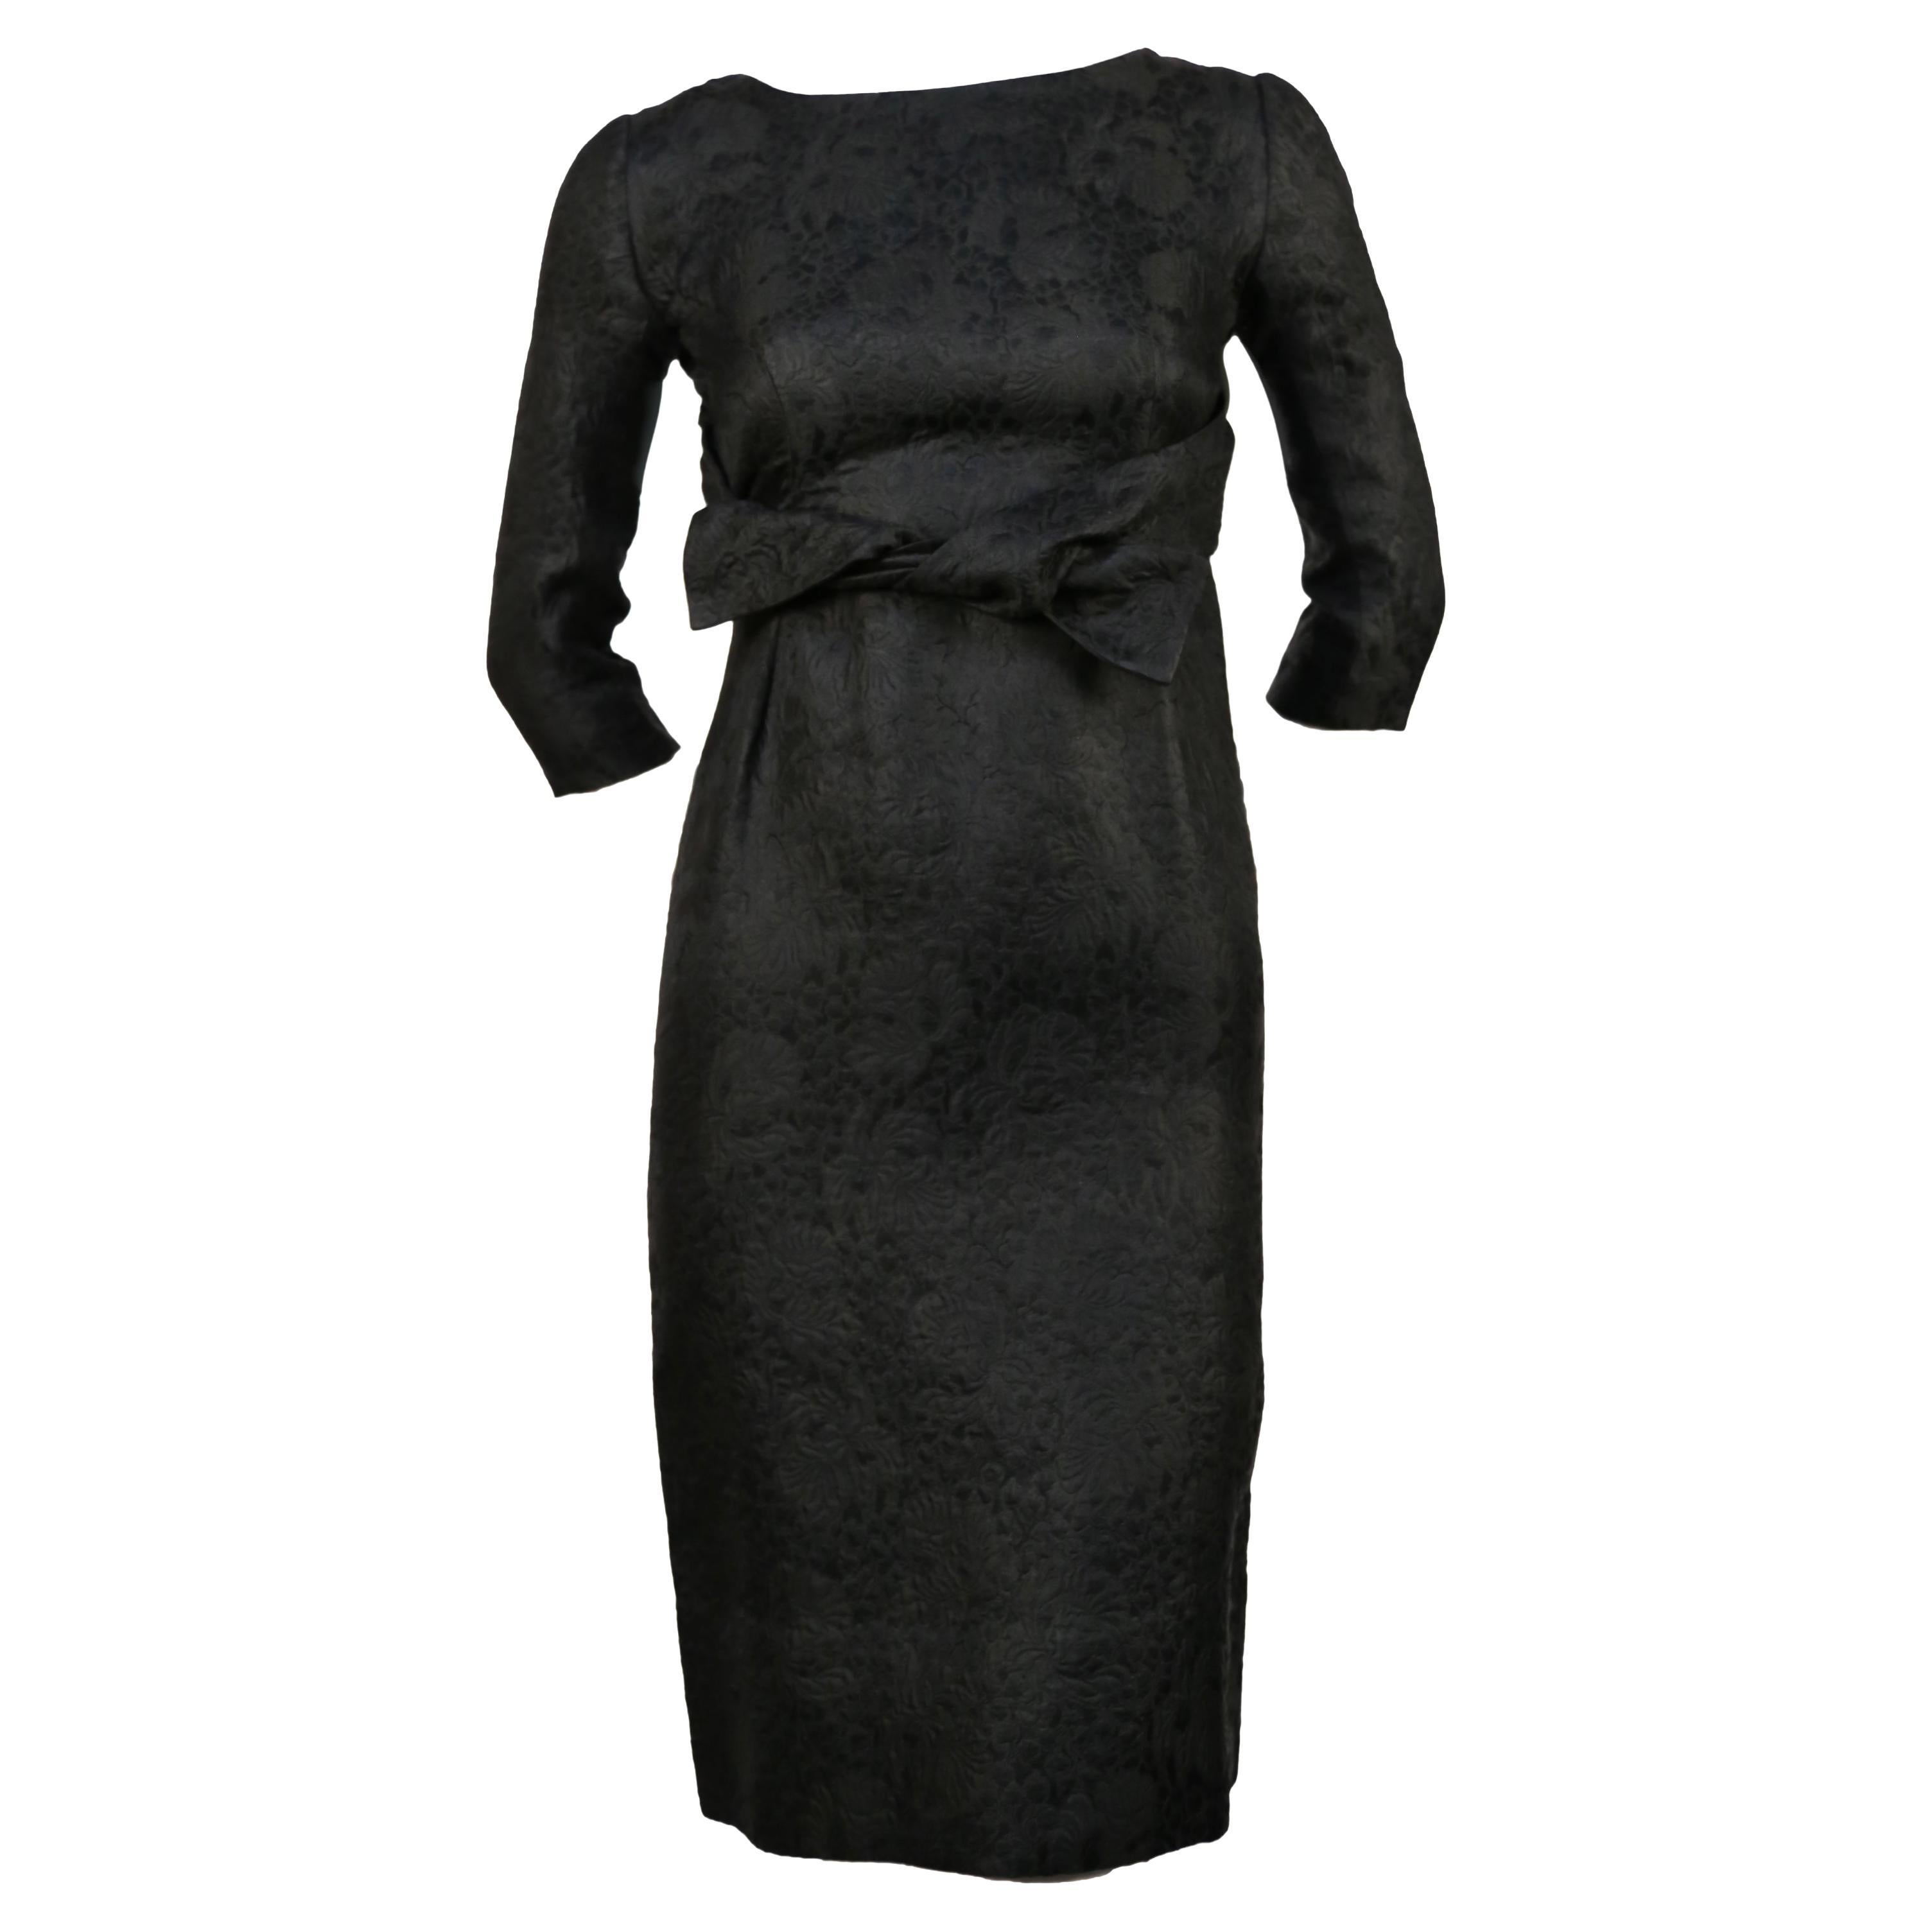 Très rare robe en brocart floral noir de jais et veste assortie de Cristobal Balenciaga datant du début des années 1960. L'ensemble convient le mieux à une petite taille 2.  Épaules étroites 13-14